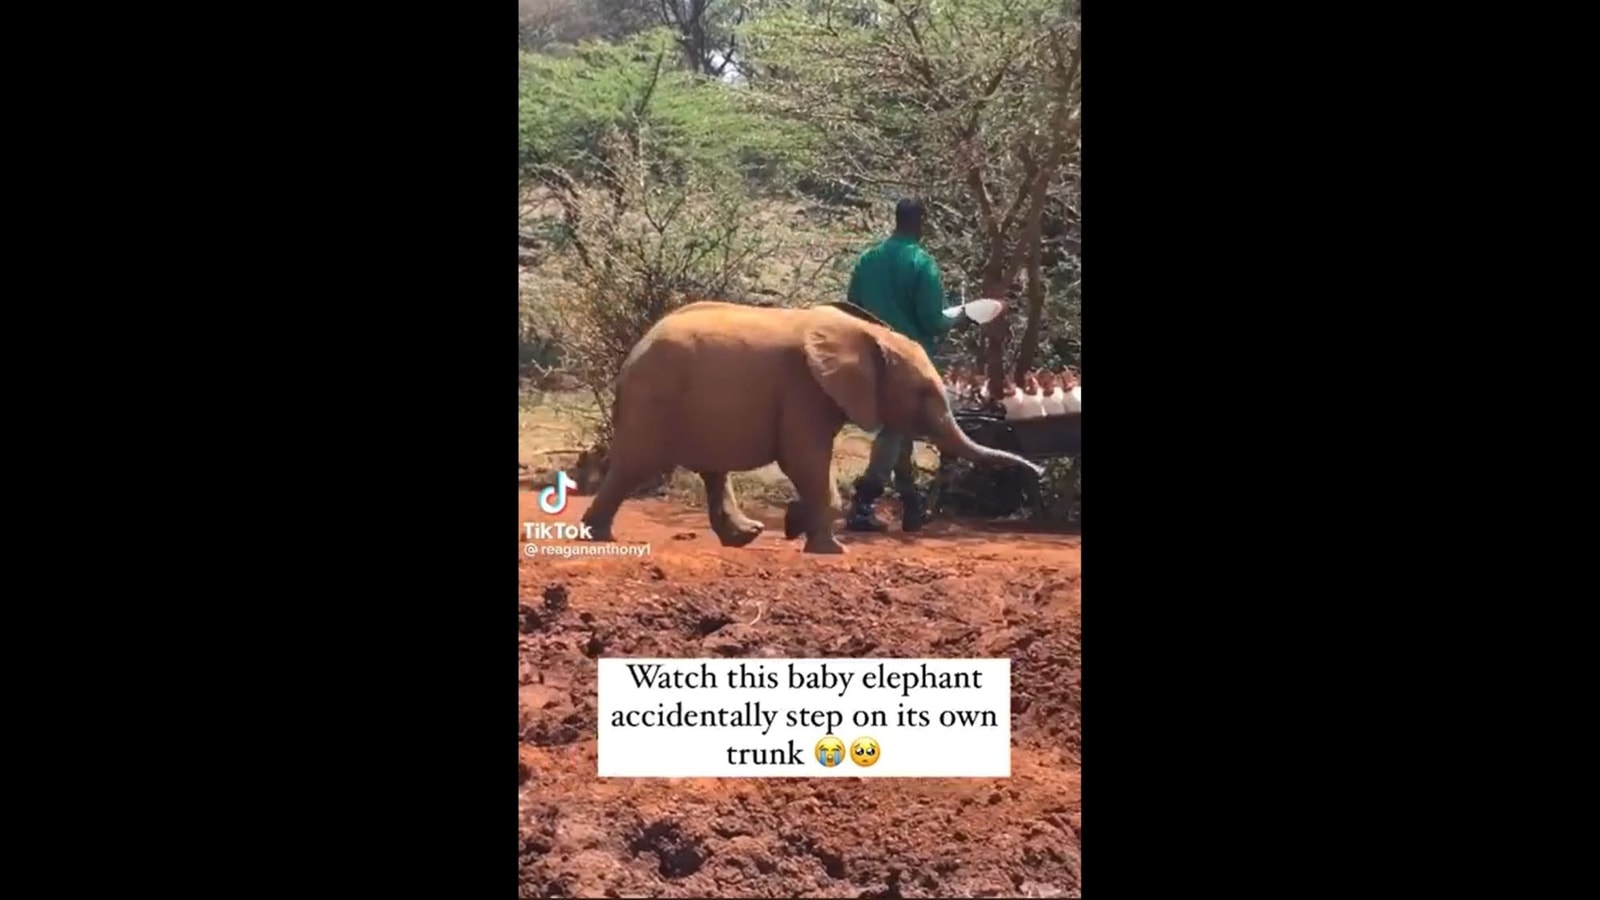 아기 코끼리는 달리면서 몸통을 밟습니다.  좋은 영상 아직 보셨나요?  |  흔한